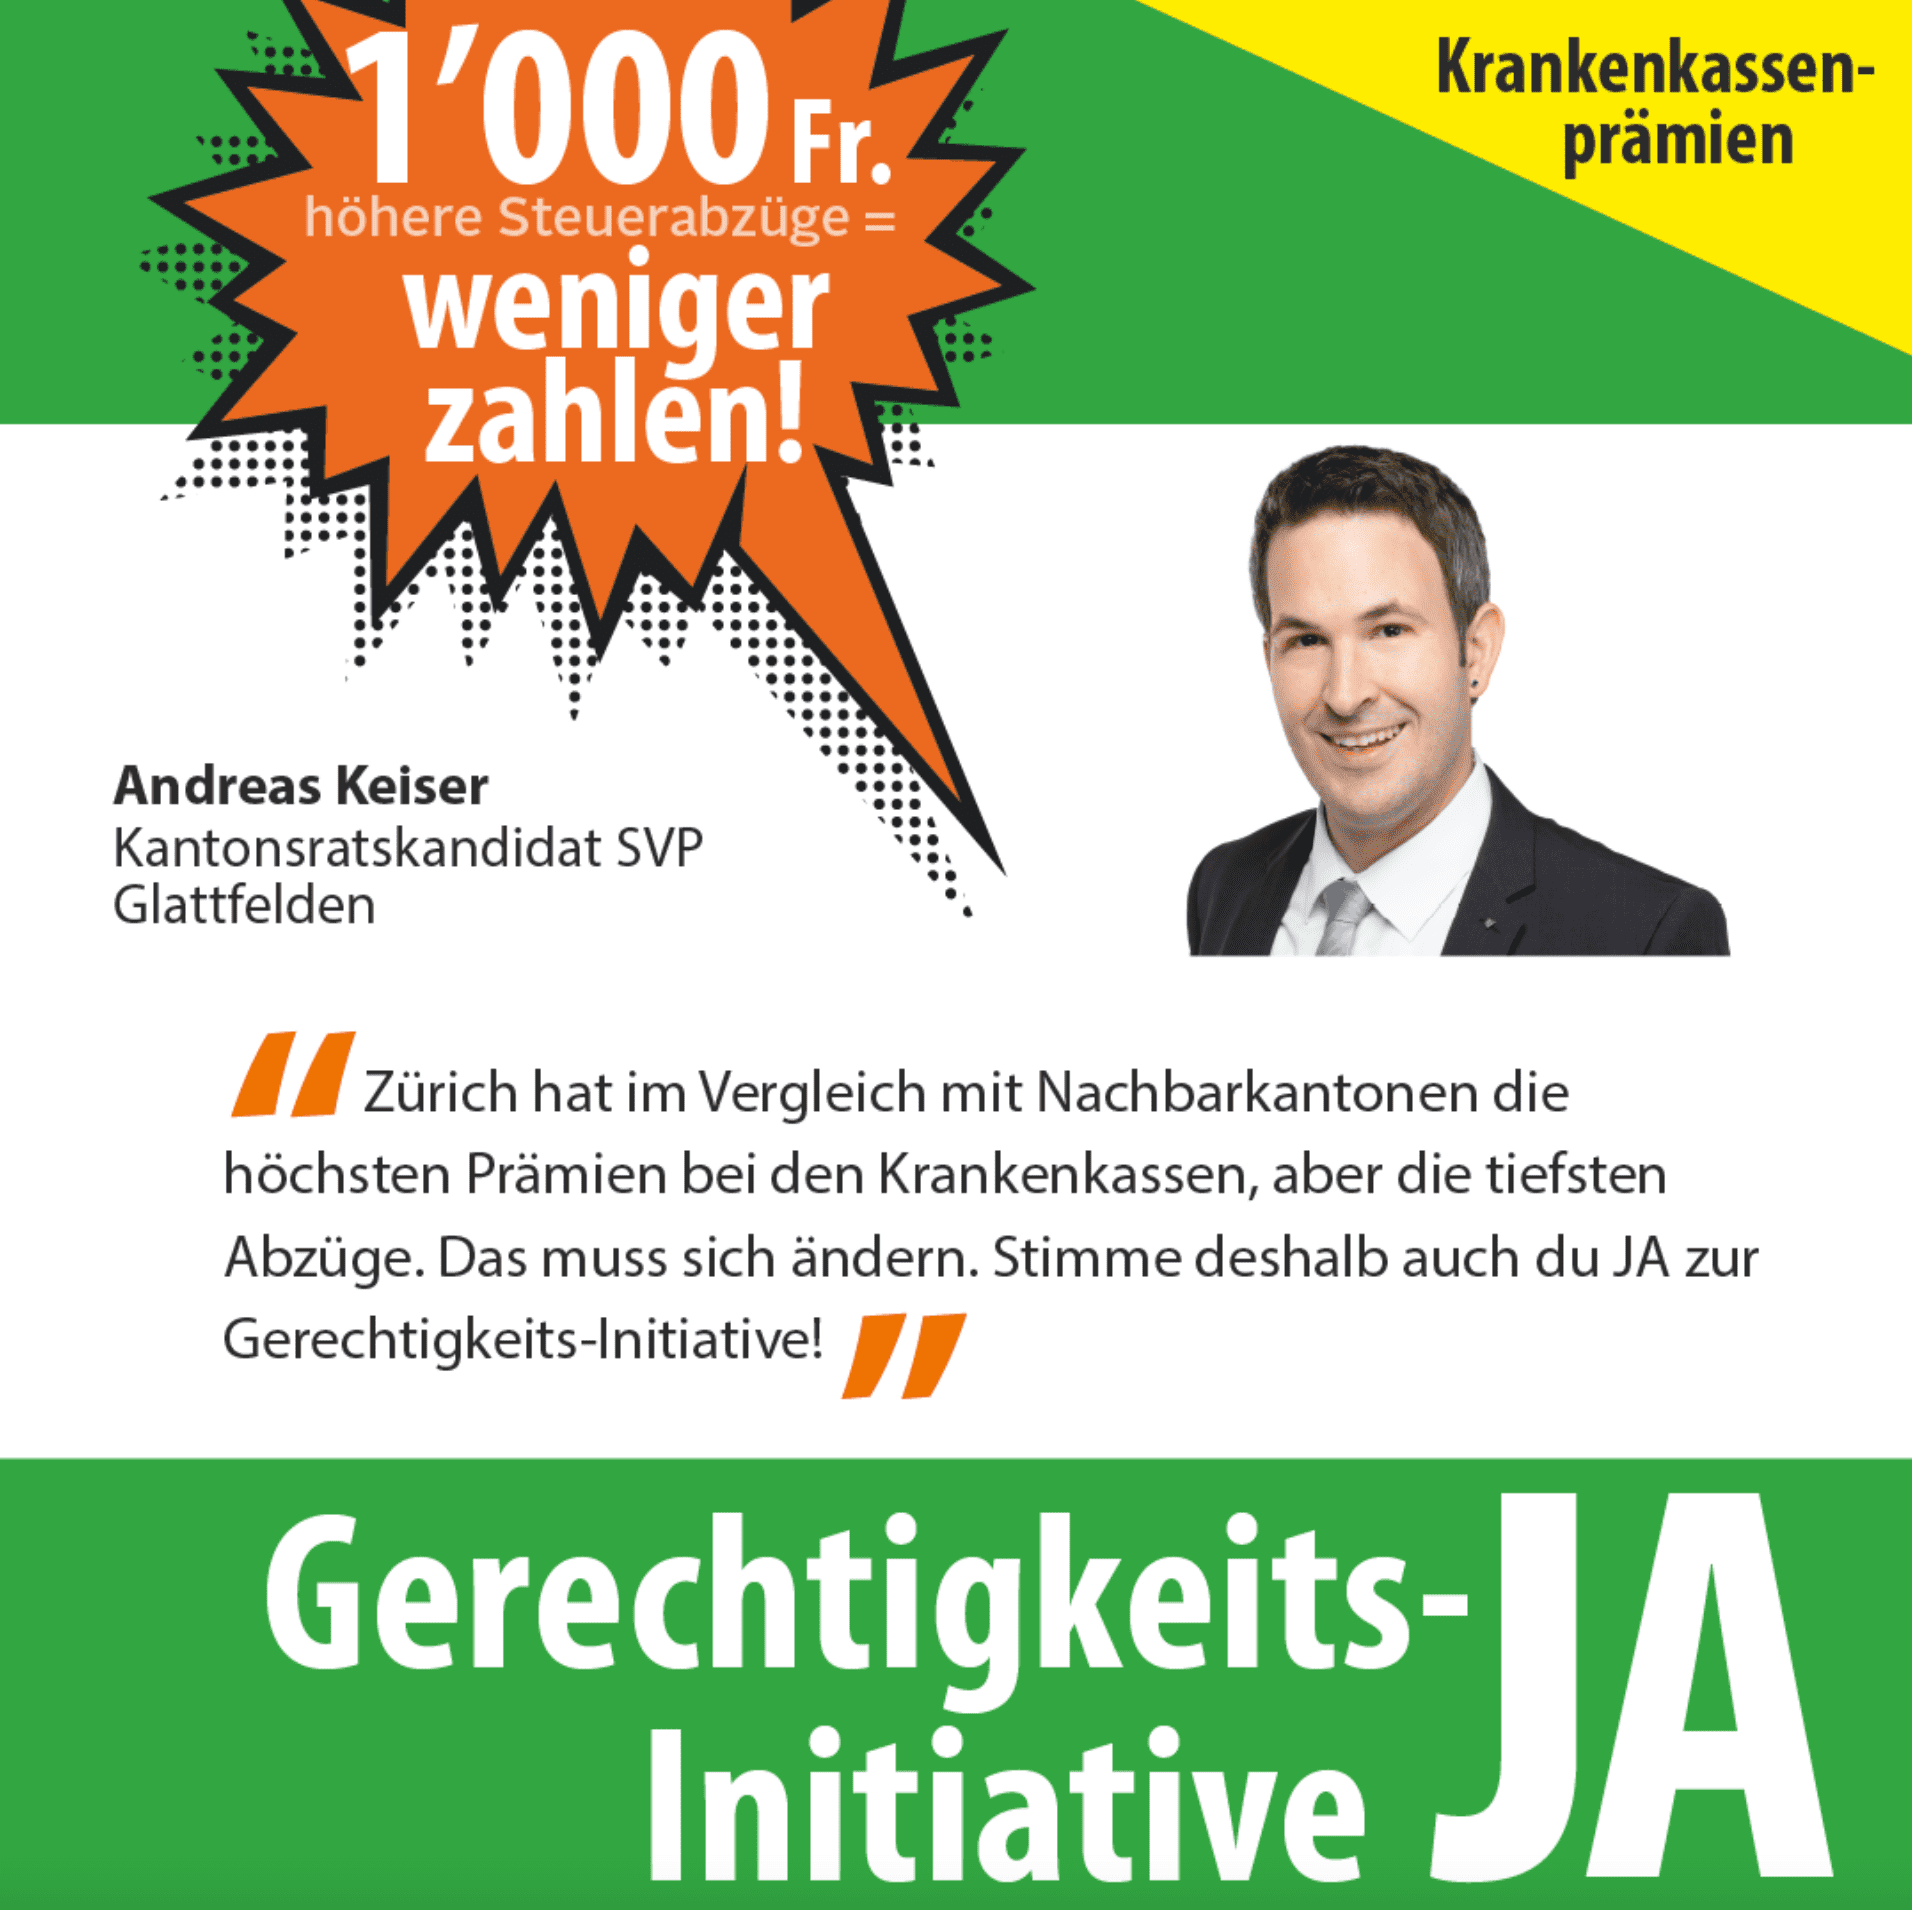 JA zur Gerechtigkeits-Initiative am 27. November 2022 im Kanton Zürich